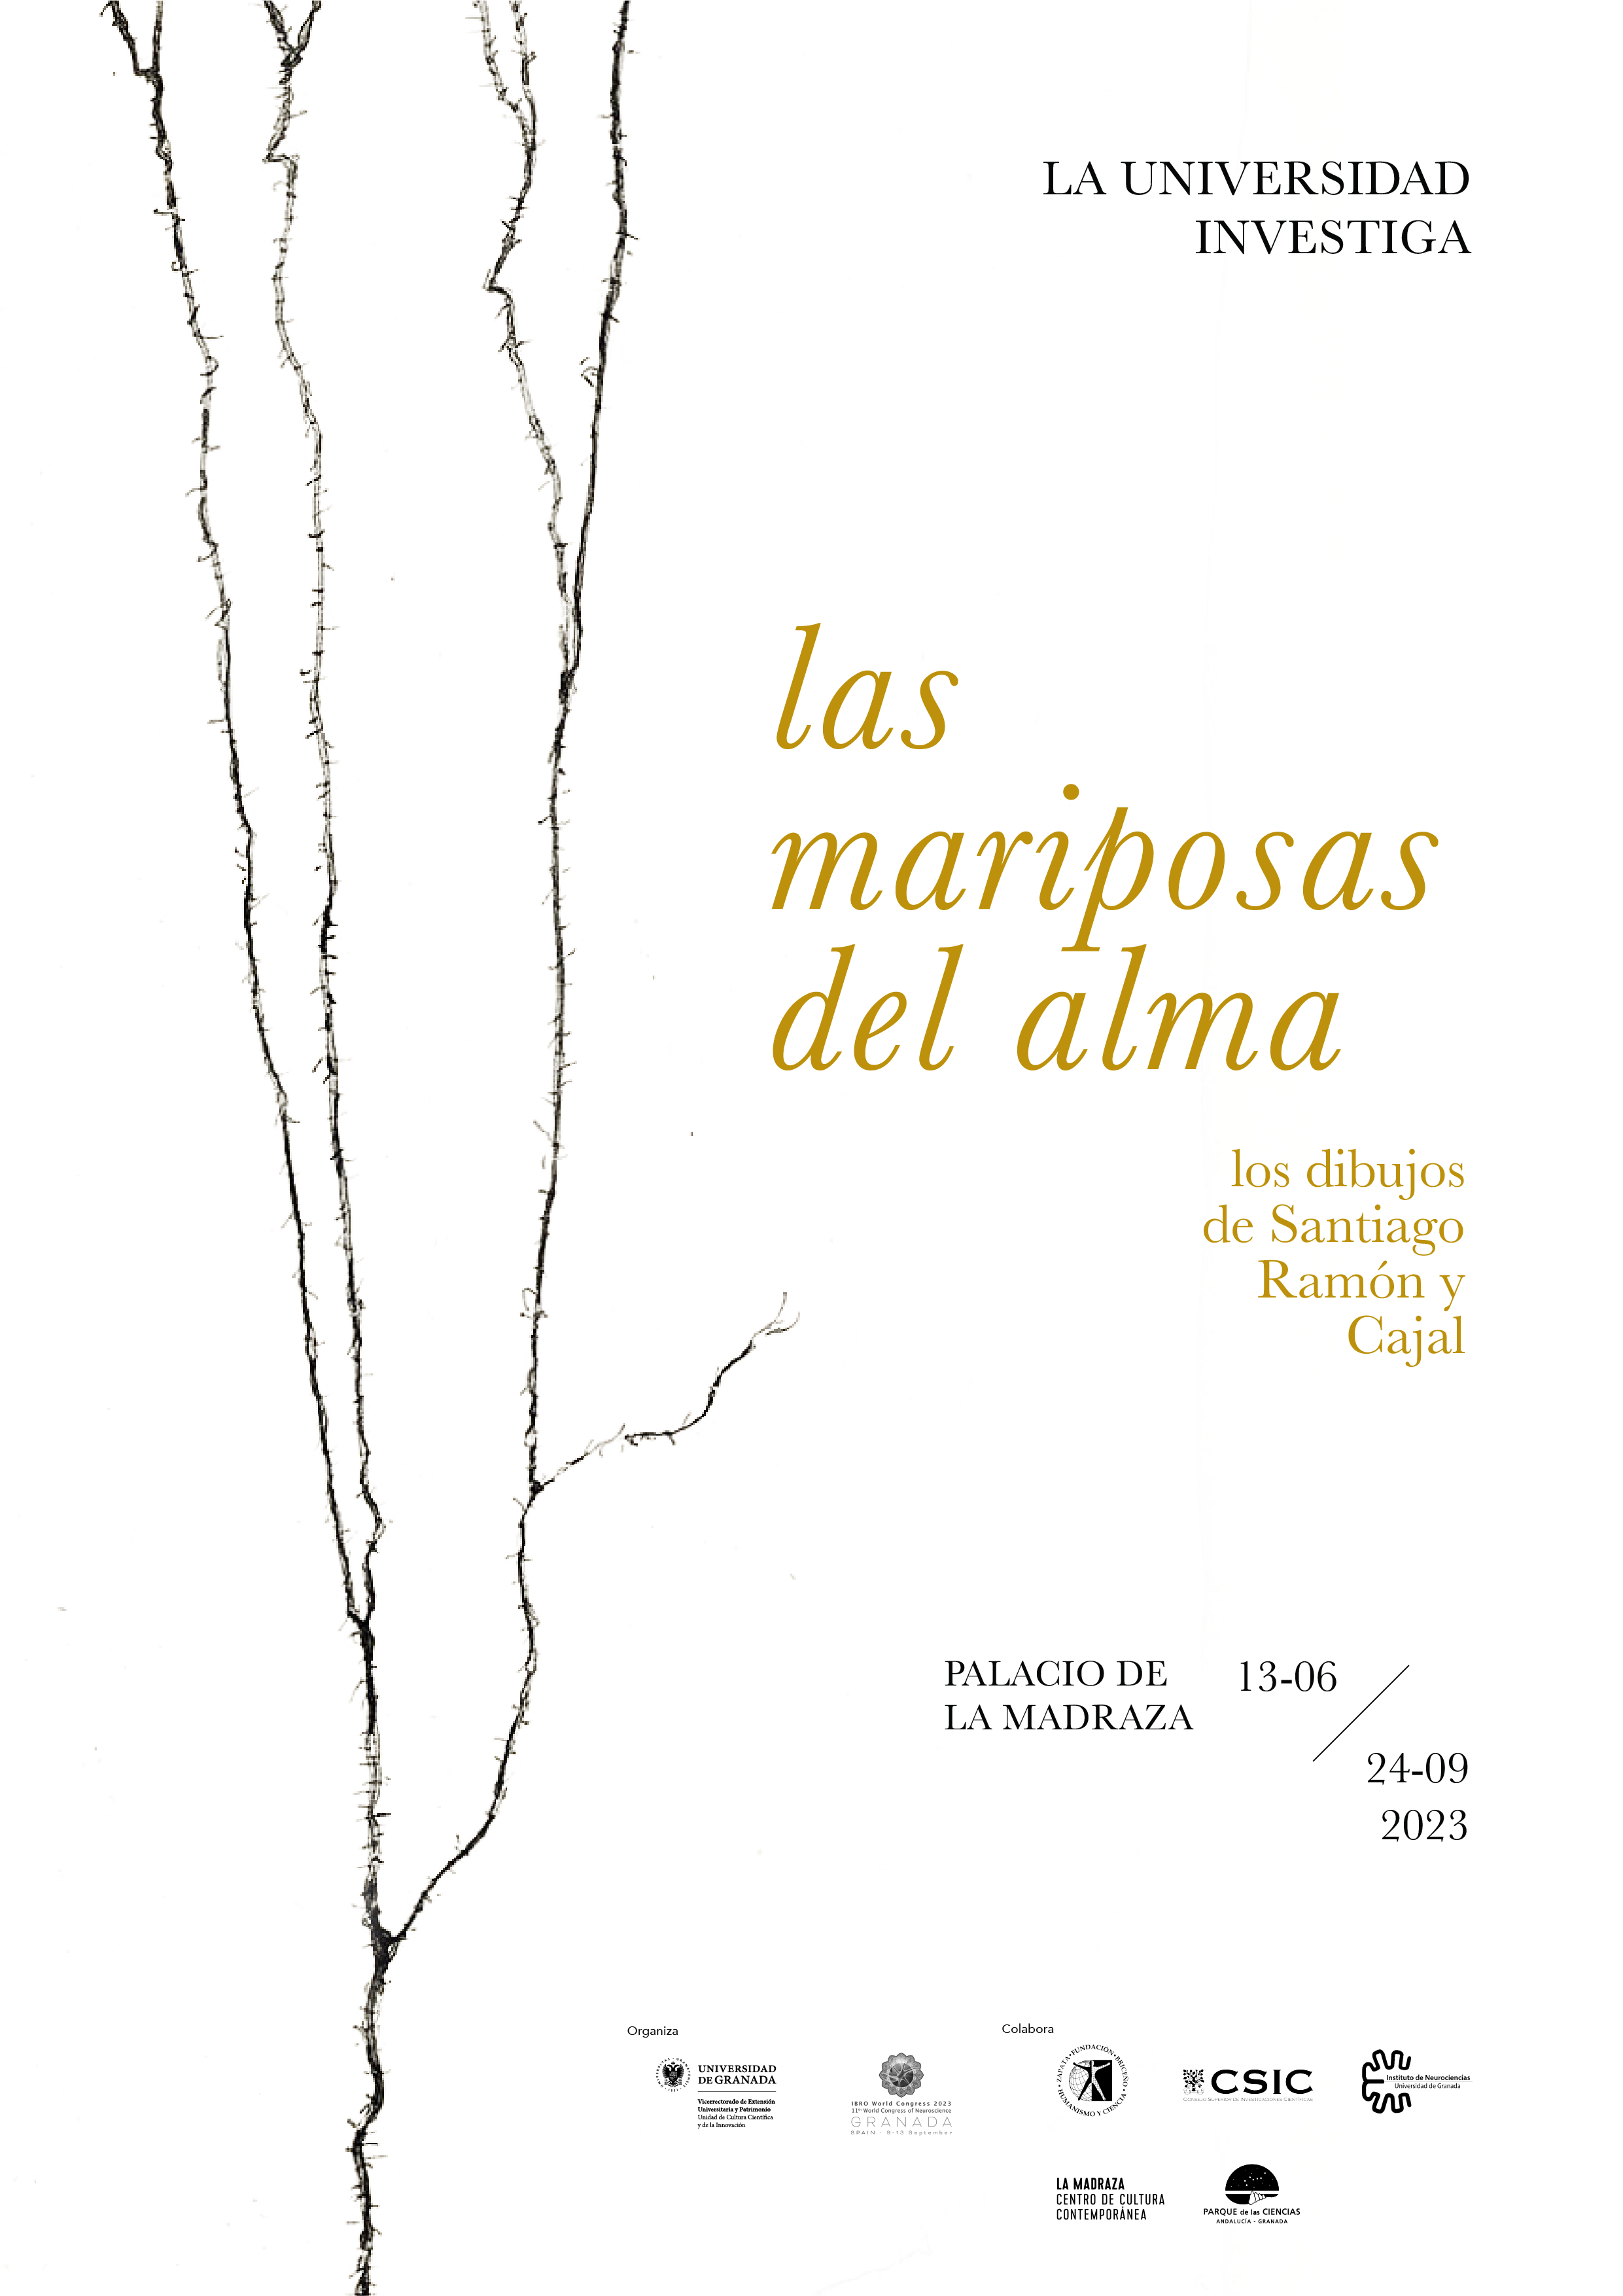 creatividad ‘Las mariposas del alma: los dibujos de Santiago Ramón y Cajal’